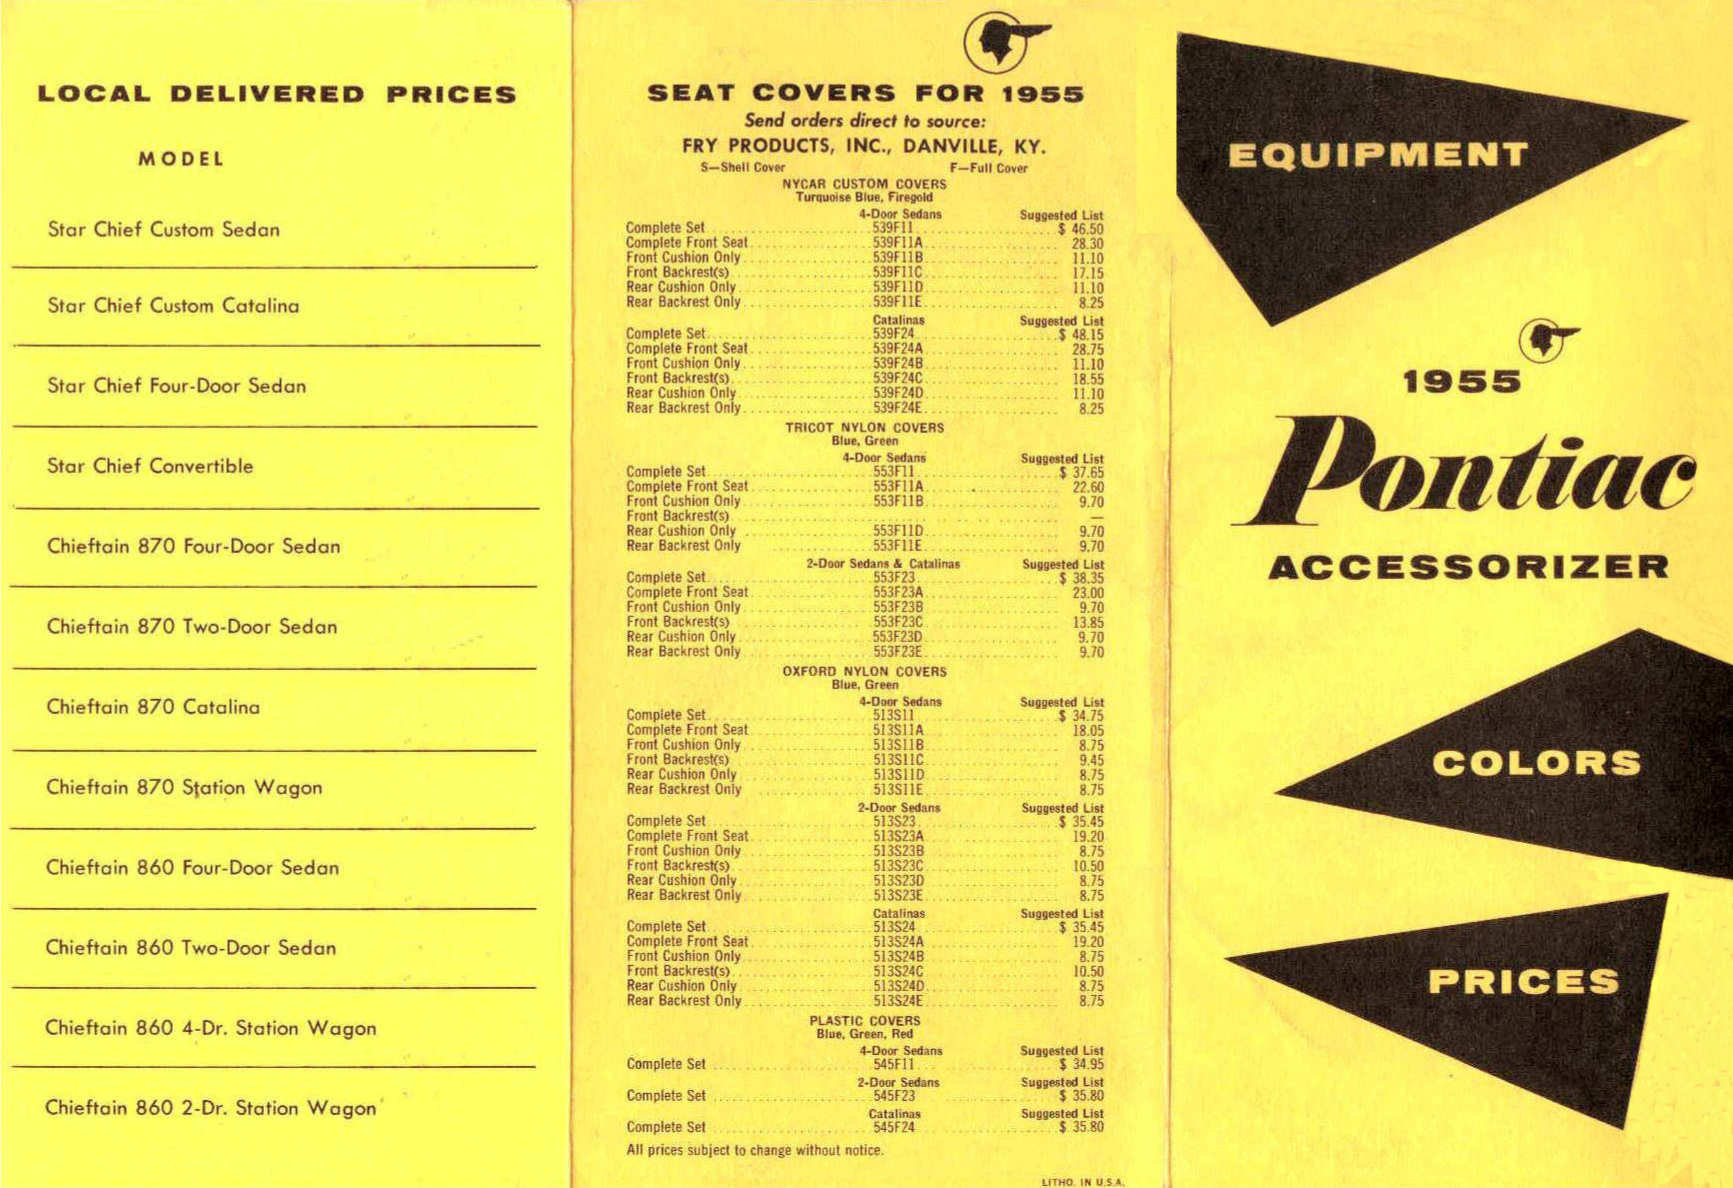 1955_Pontiac_Accessorizer-01